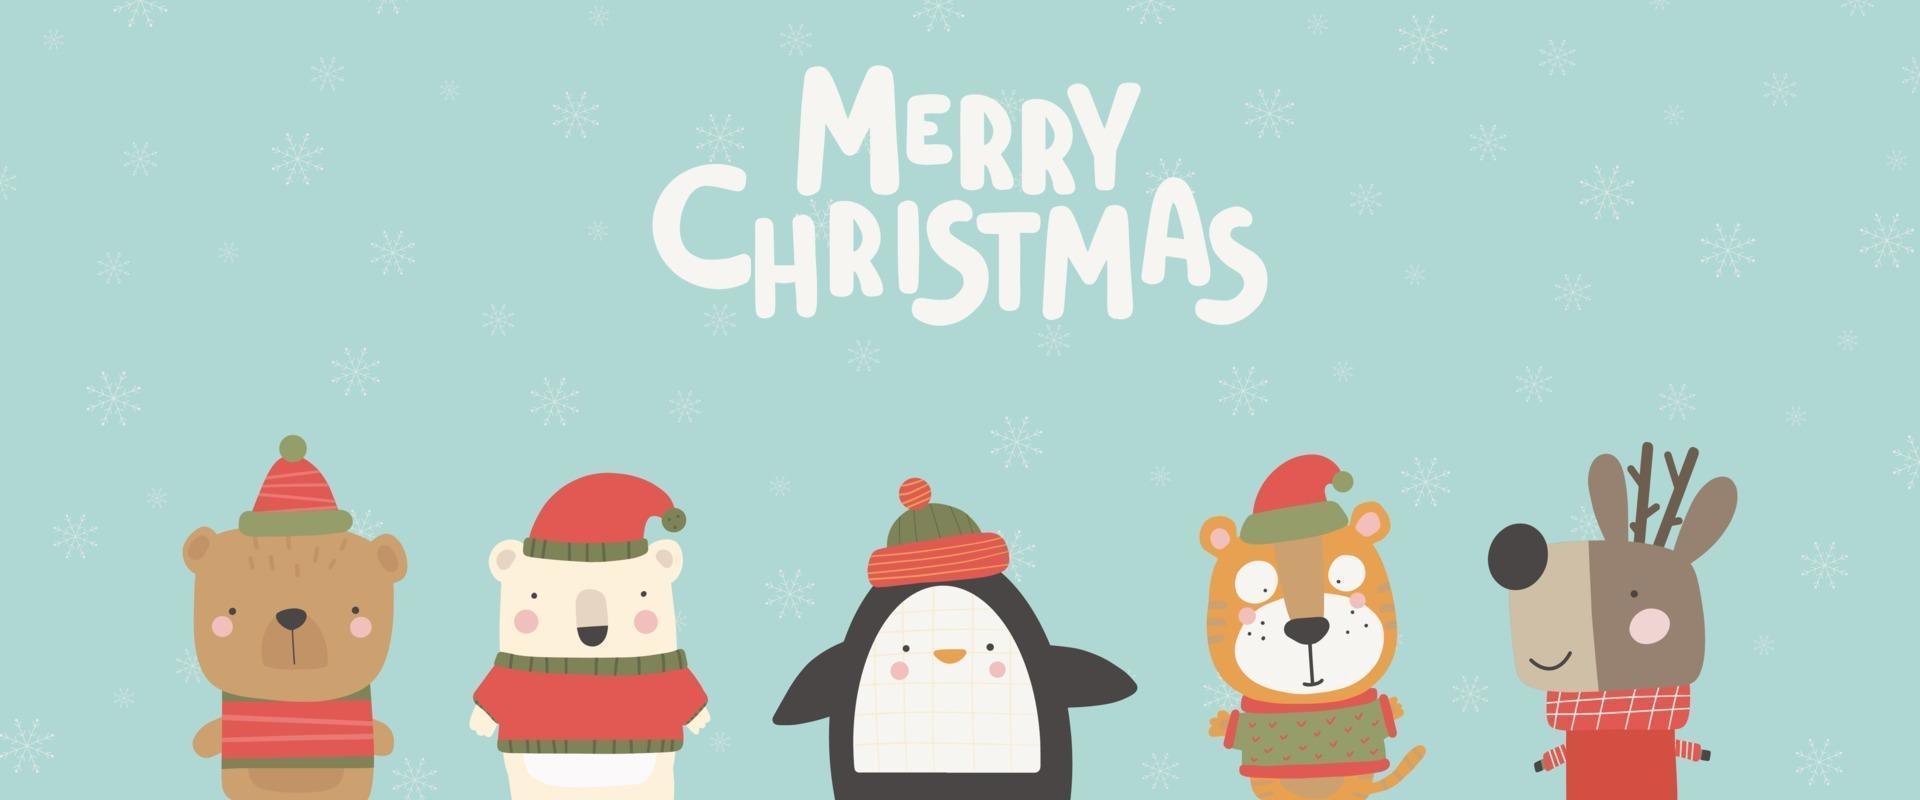 tarjeta de navidad con lindos animales. tarjeta de felicitación de personajes dibujados a mano vector